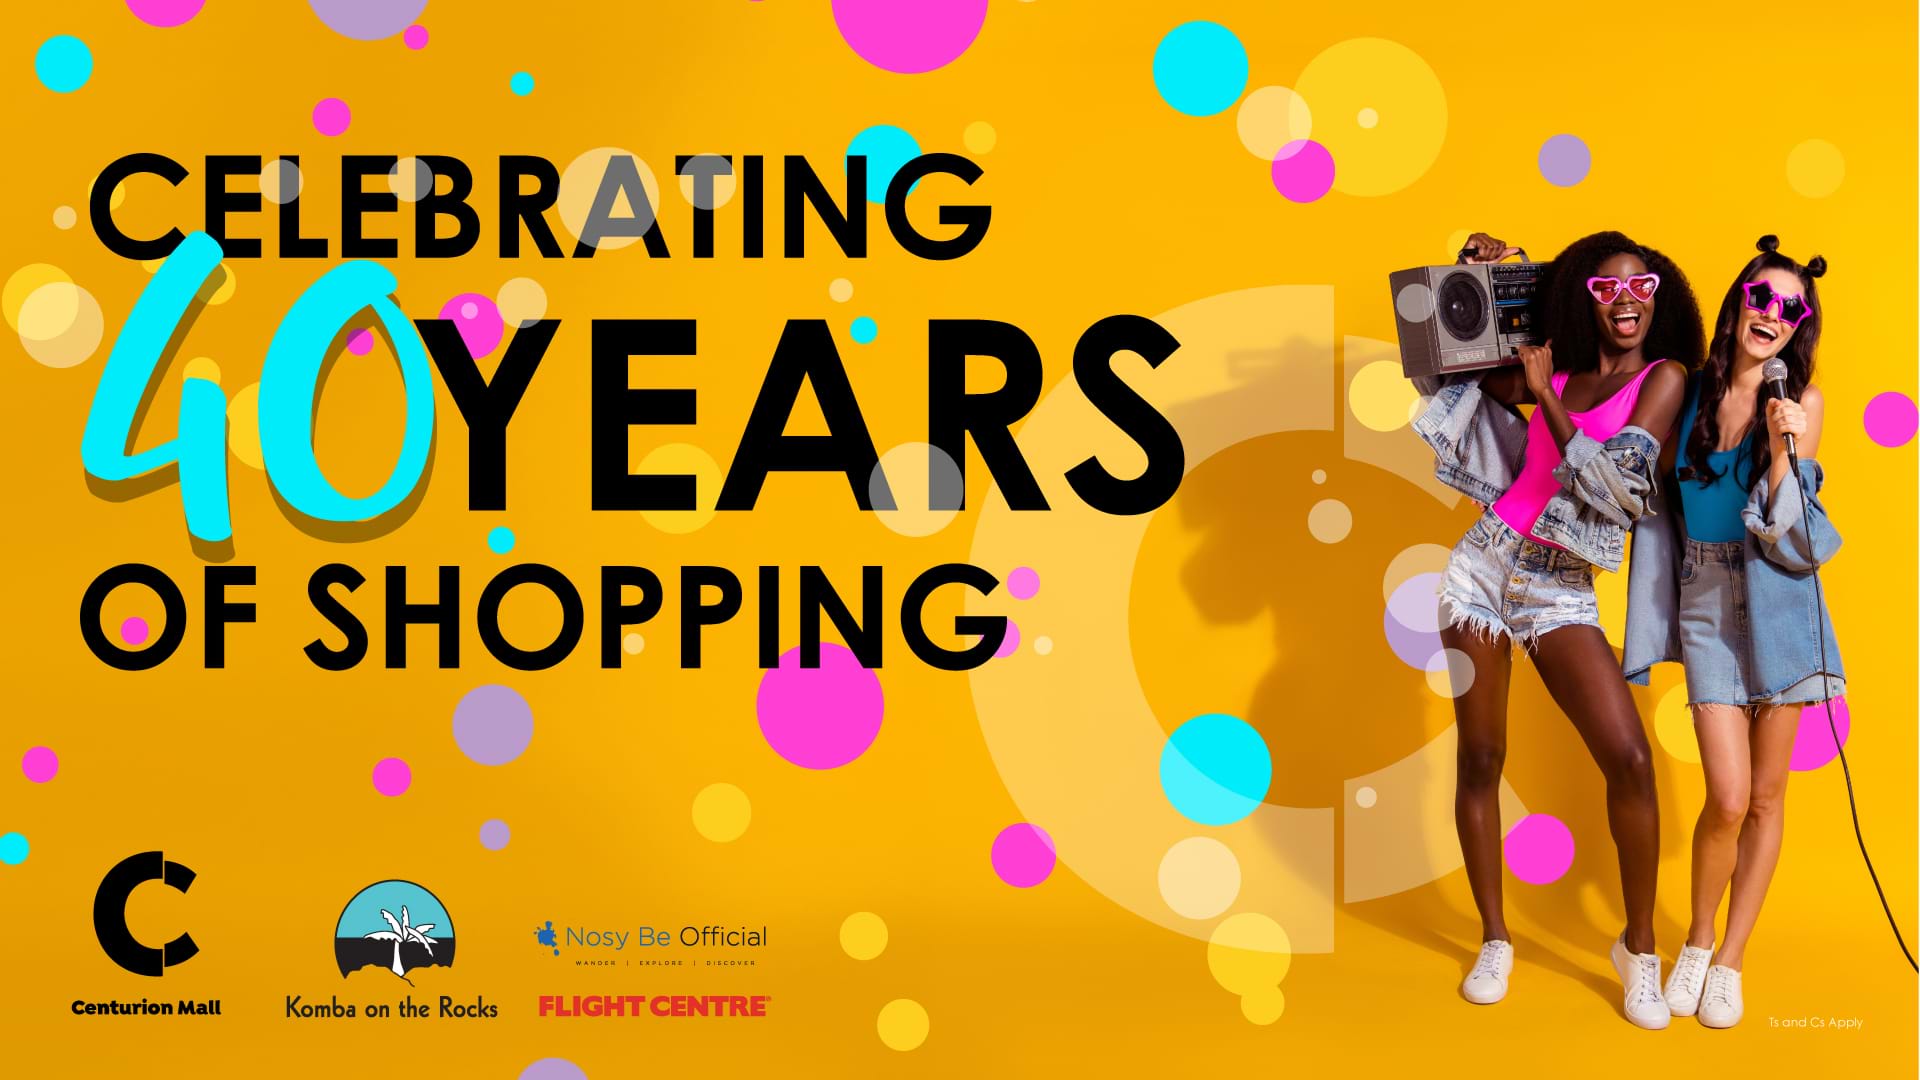 Celebrating 40 Years of Shopping